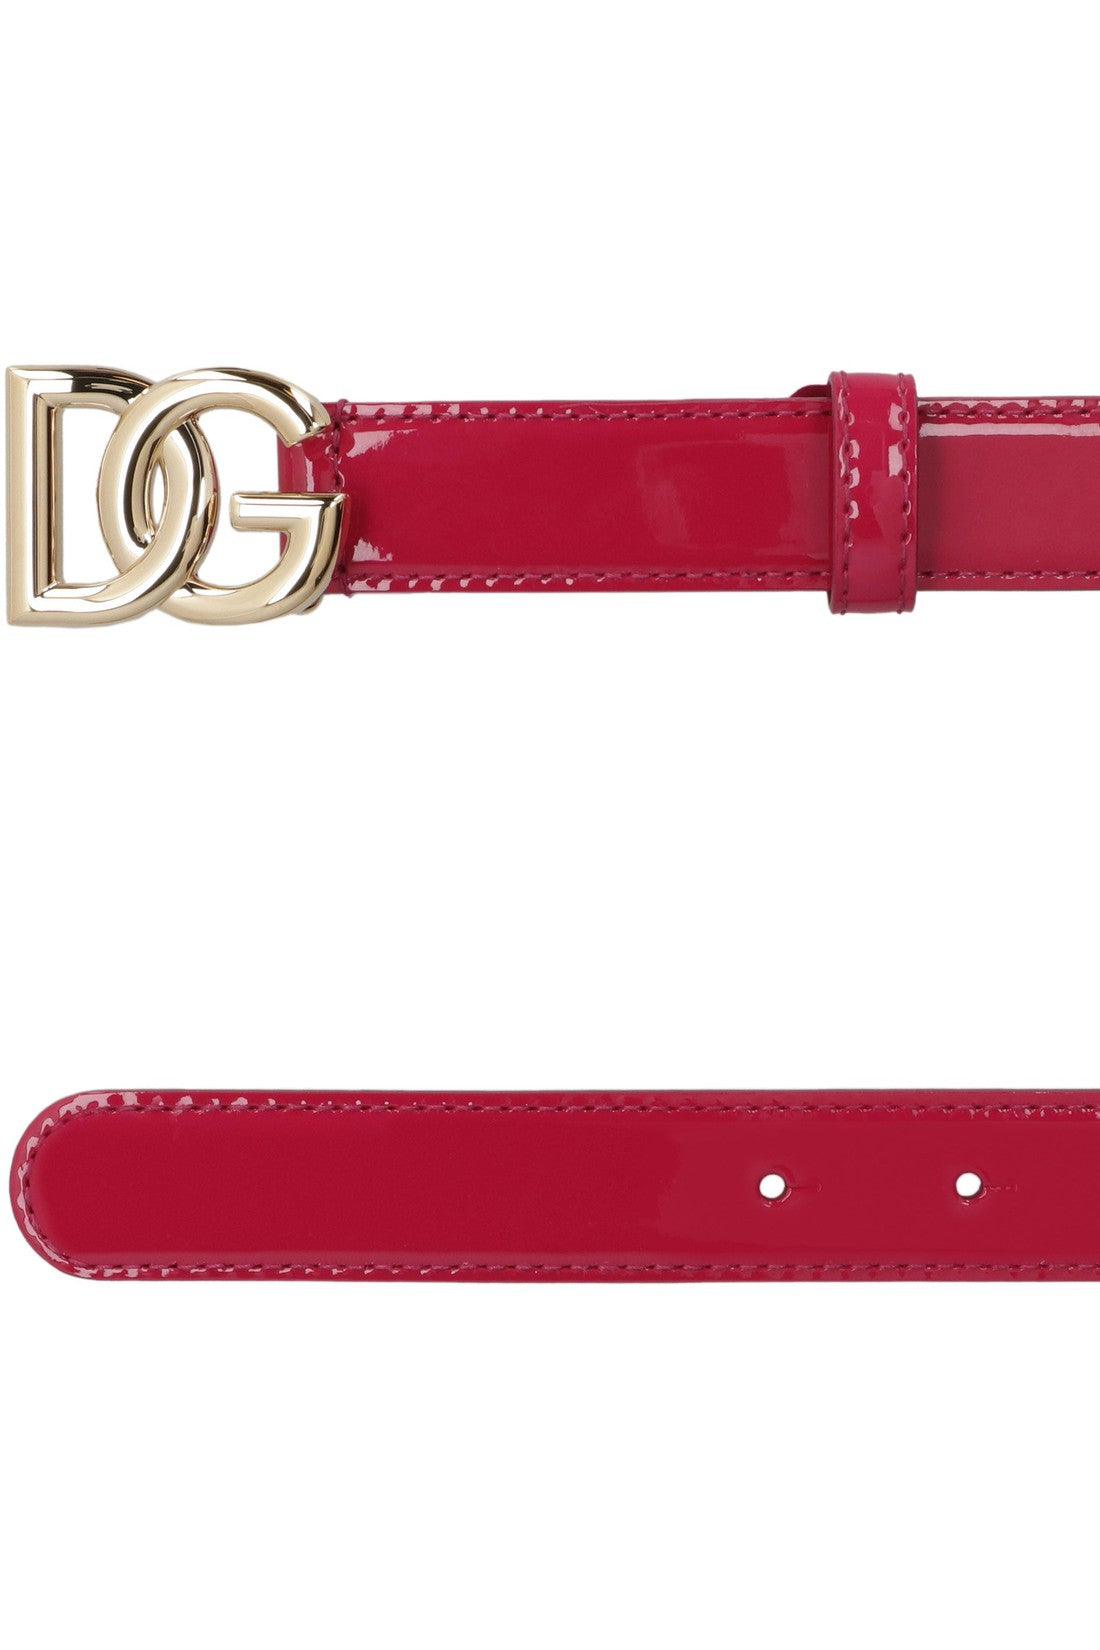 Dolce & Gabbana-OUTLET-SALE-DG buckle patent leather belt-ARCHIVIST